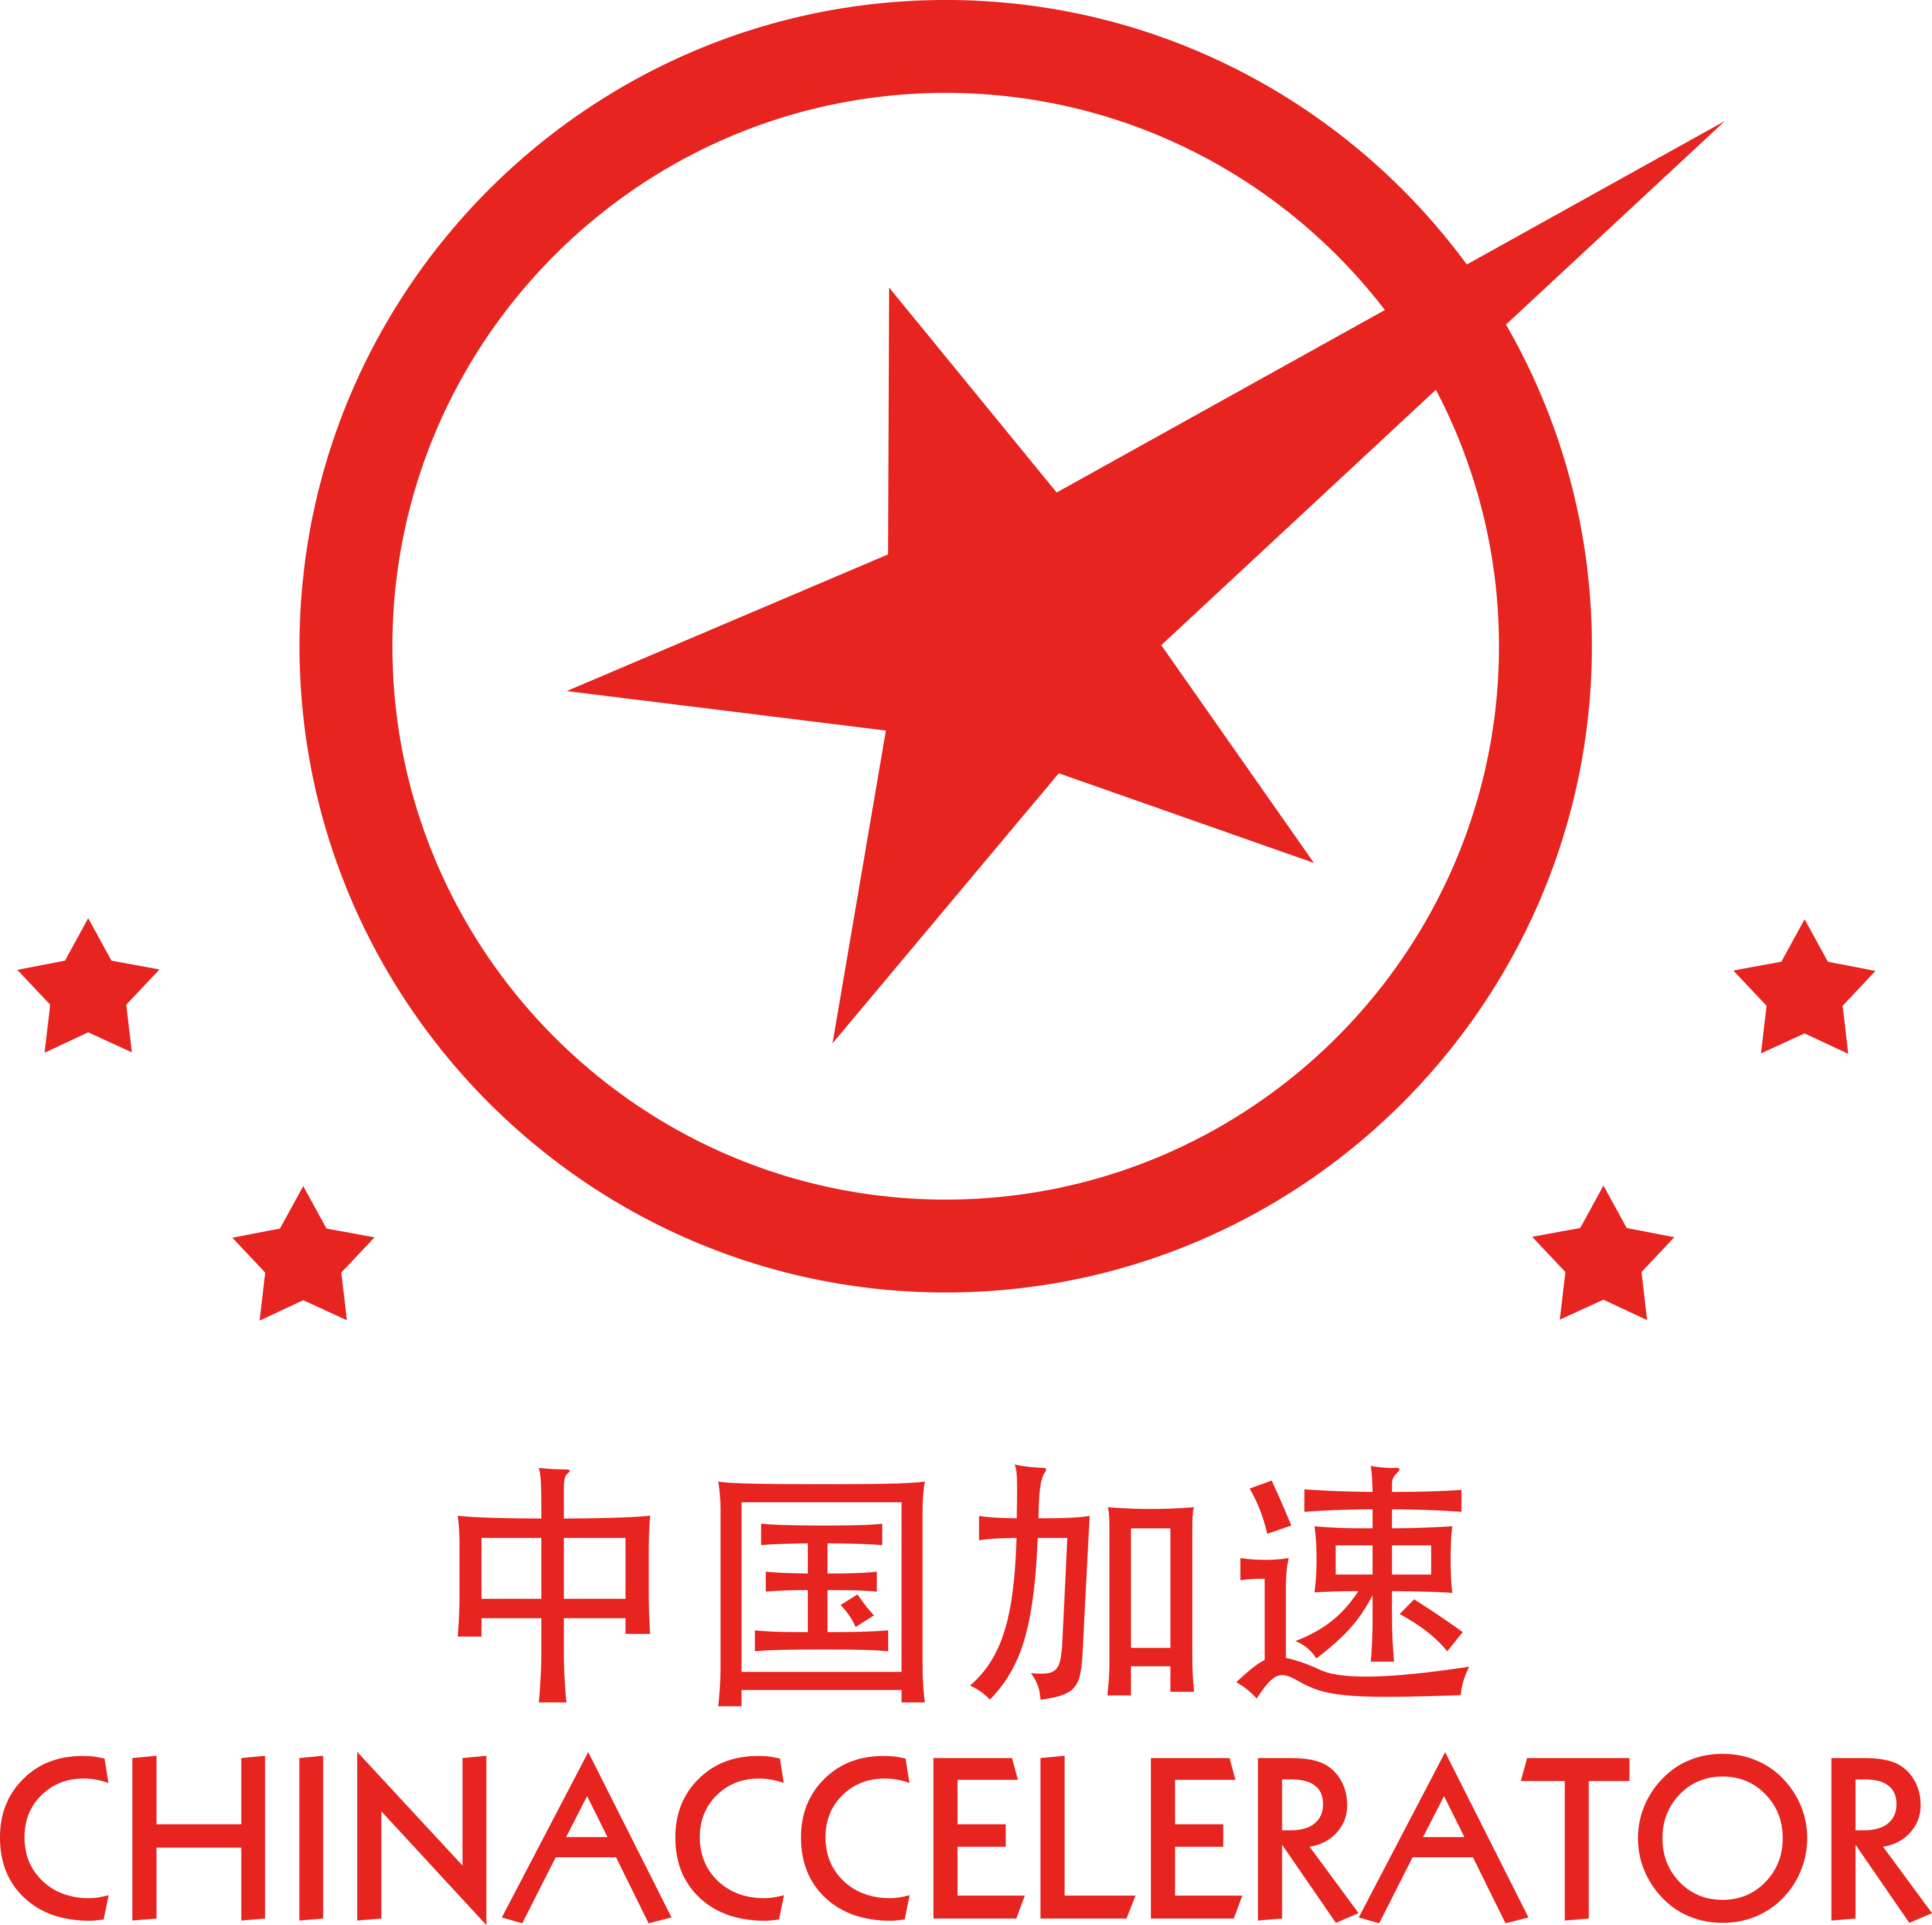 中国加速Chinaccelerator